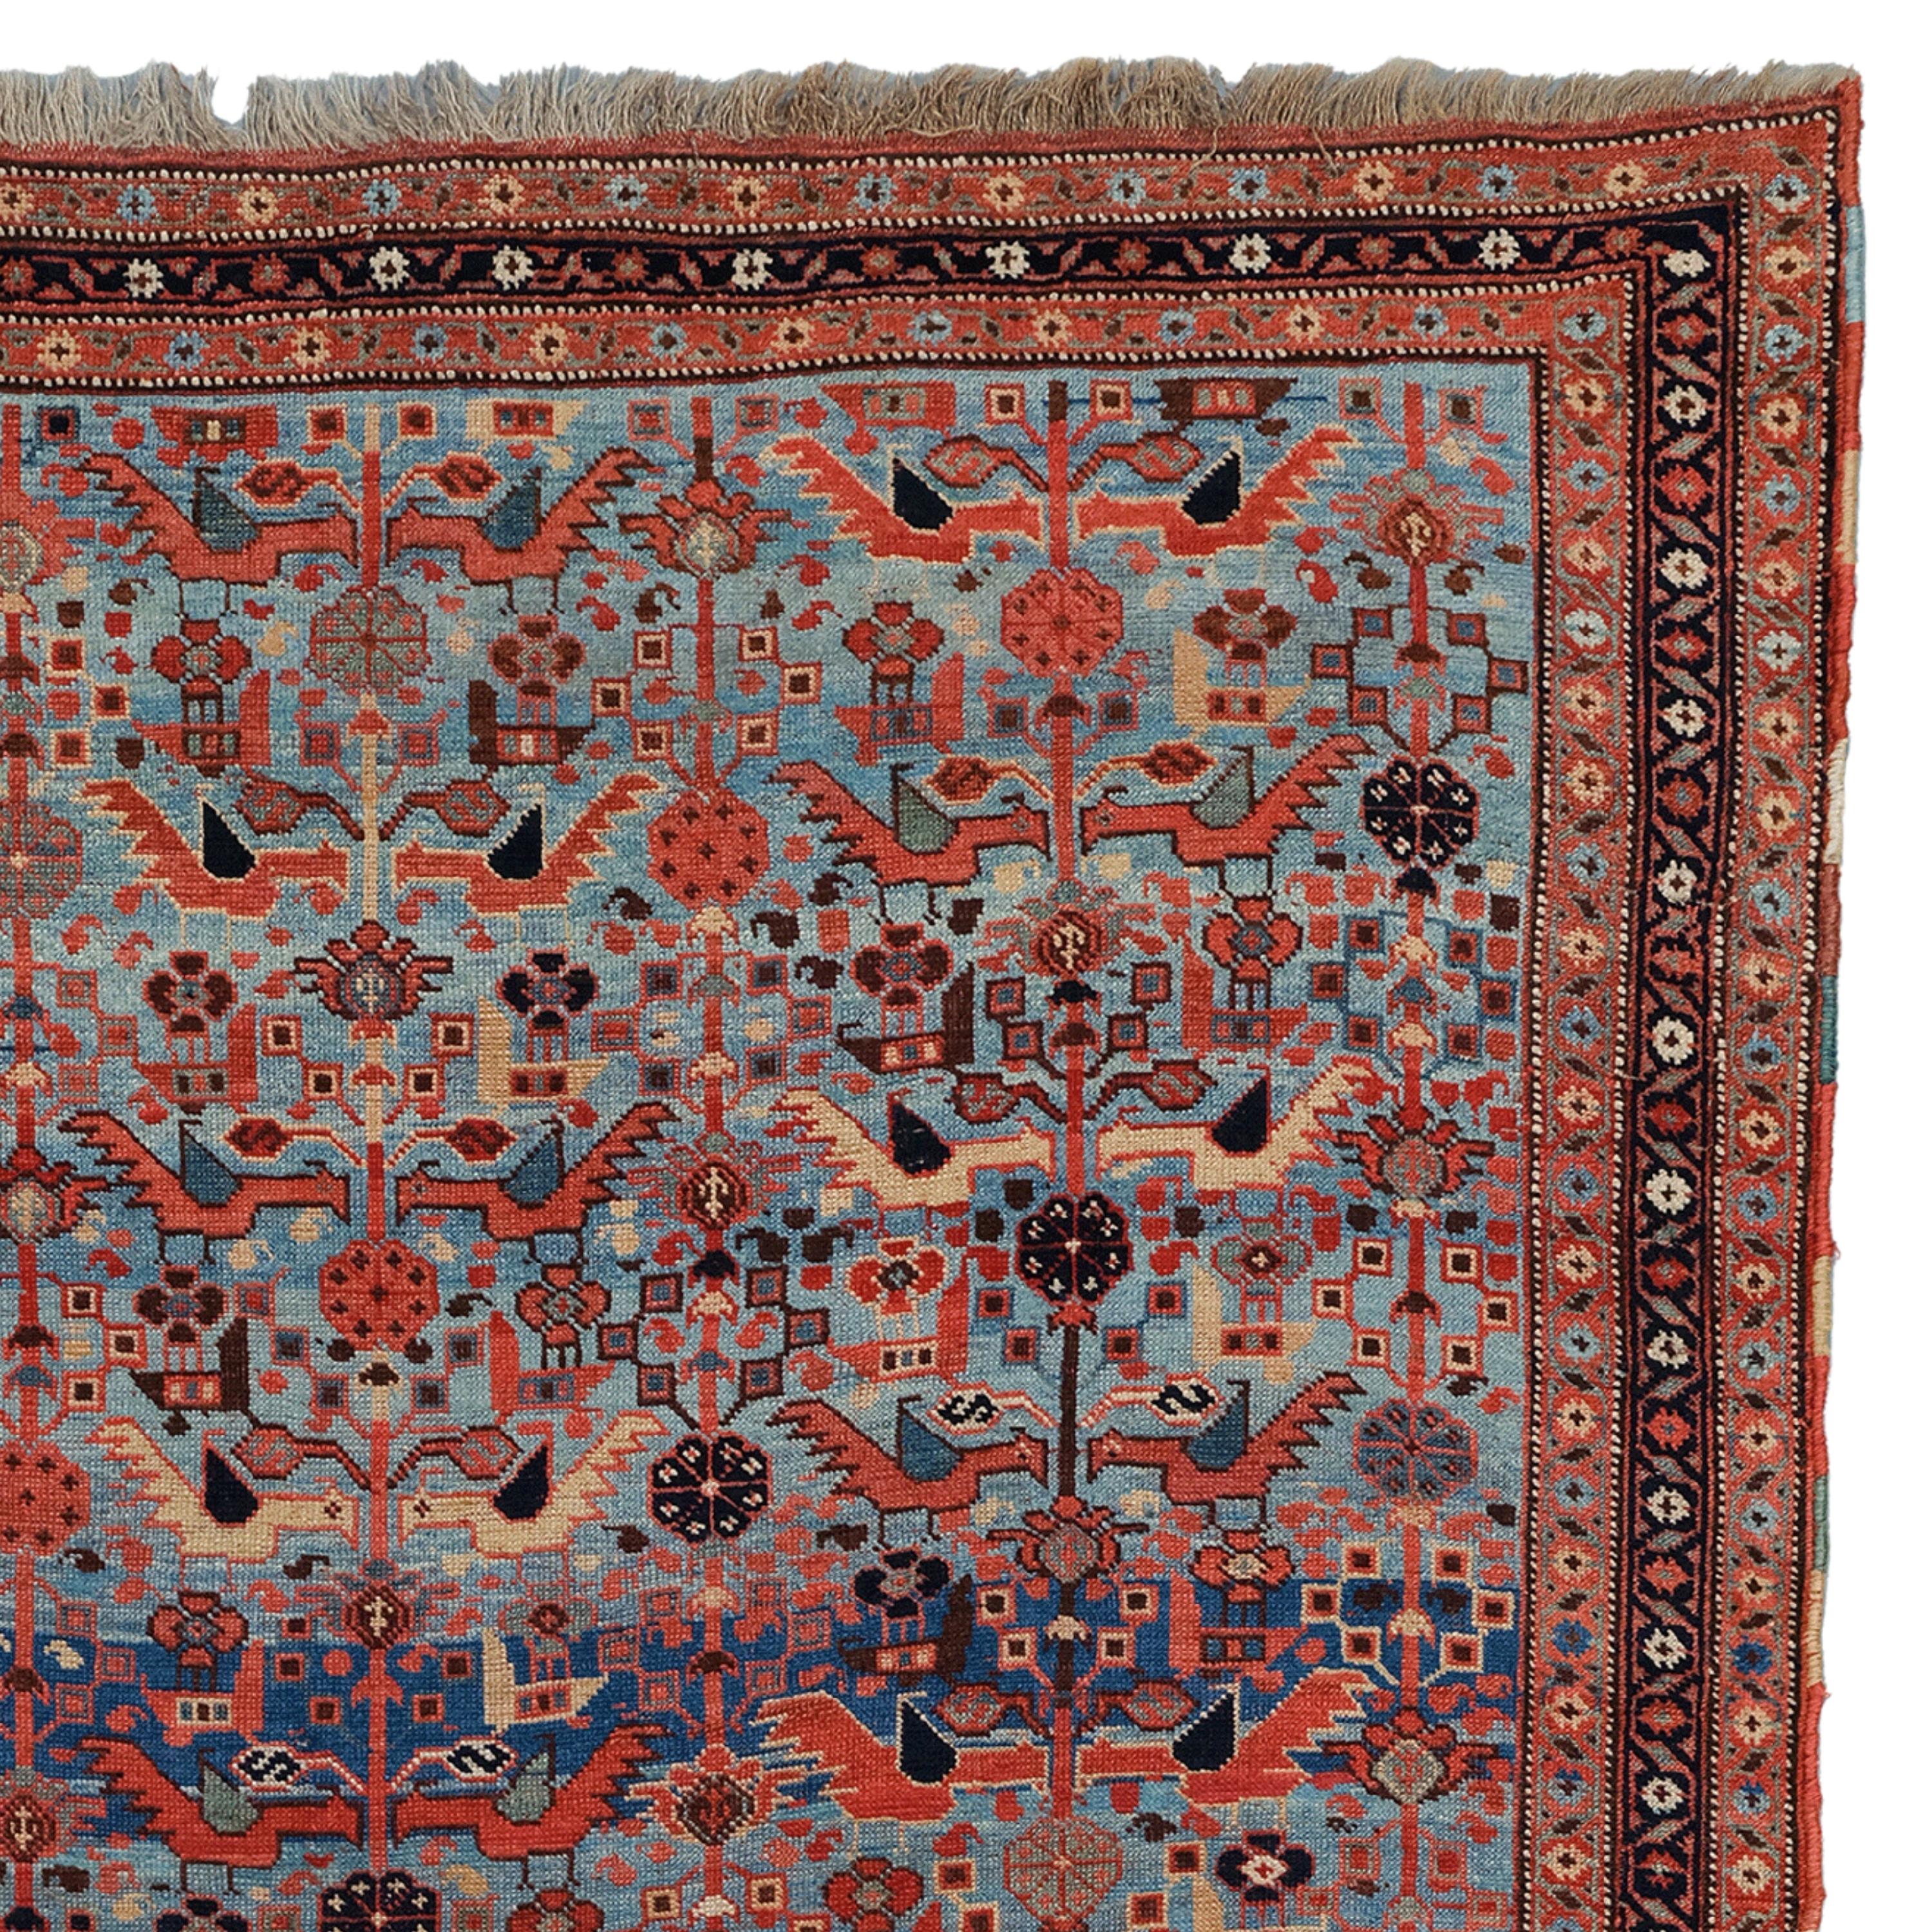 19th Century Antique Khamseh Rug, Antique Rug, Antique Carpet, Antique Persian Rug For Sale